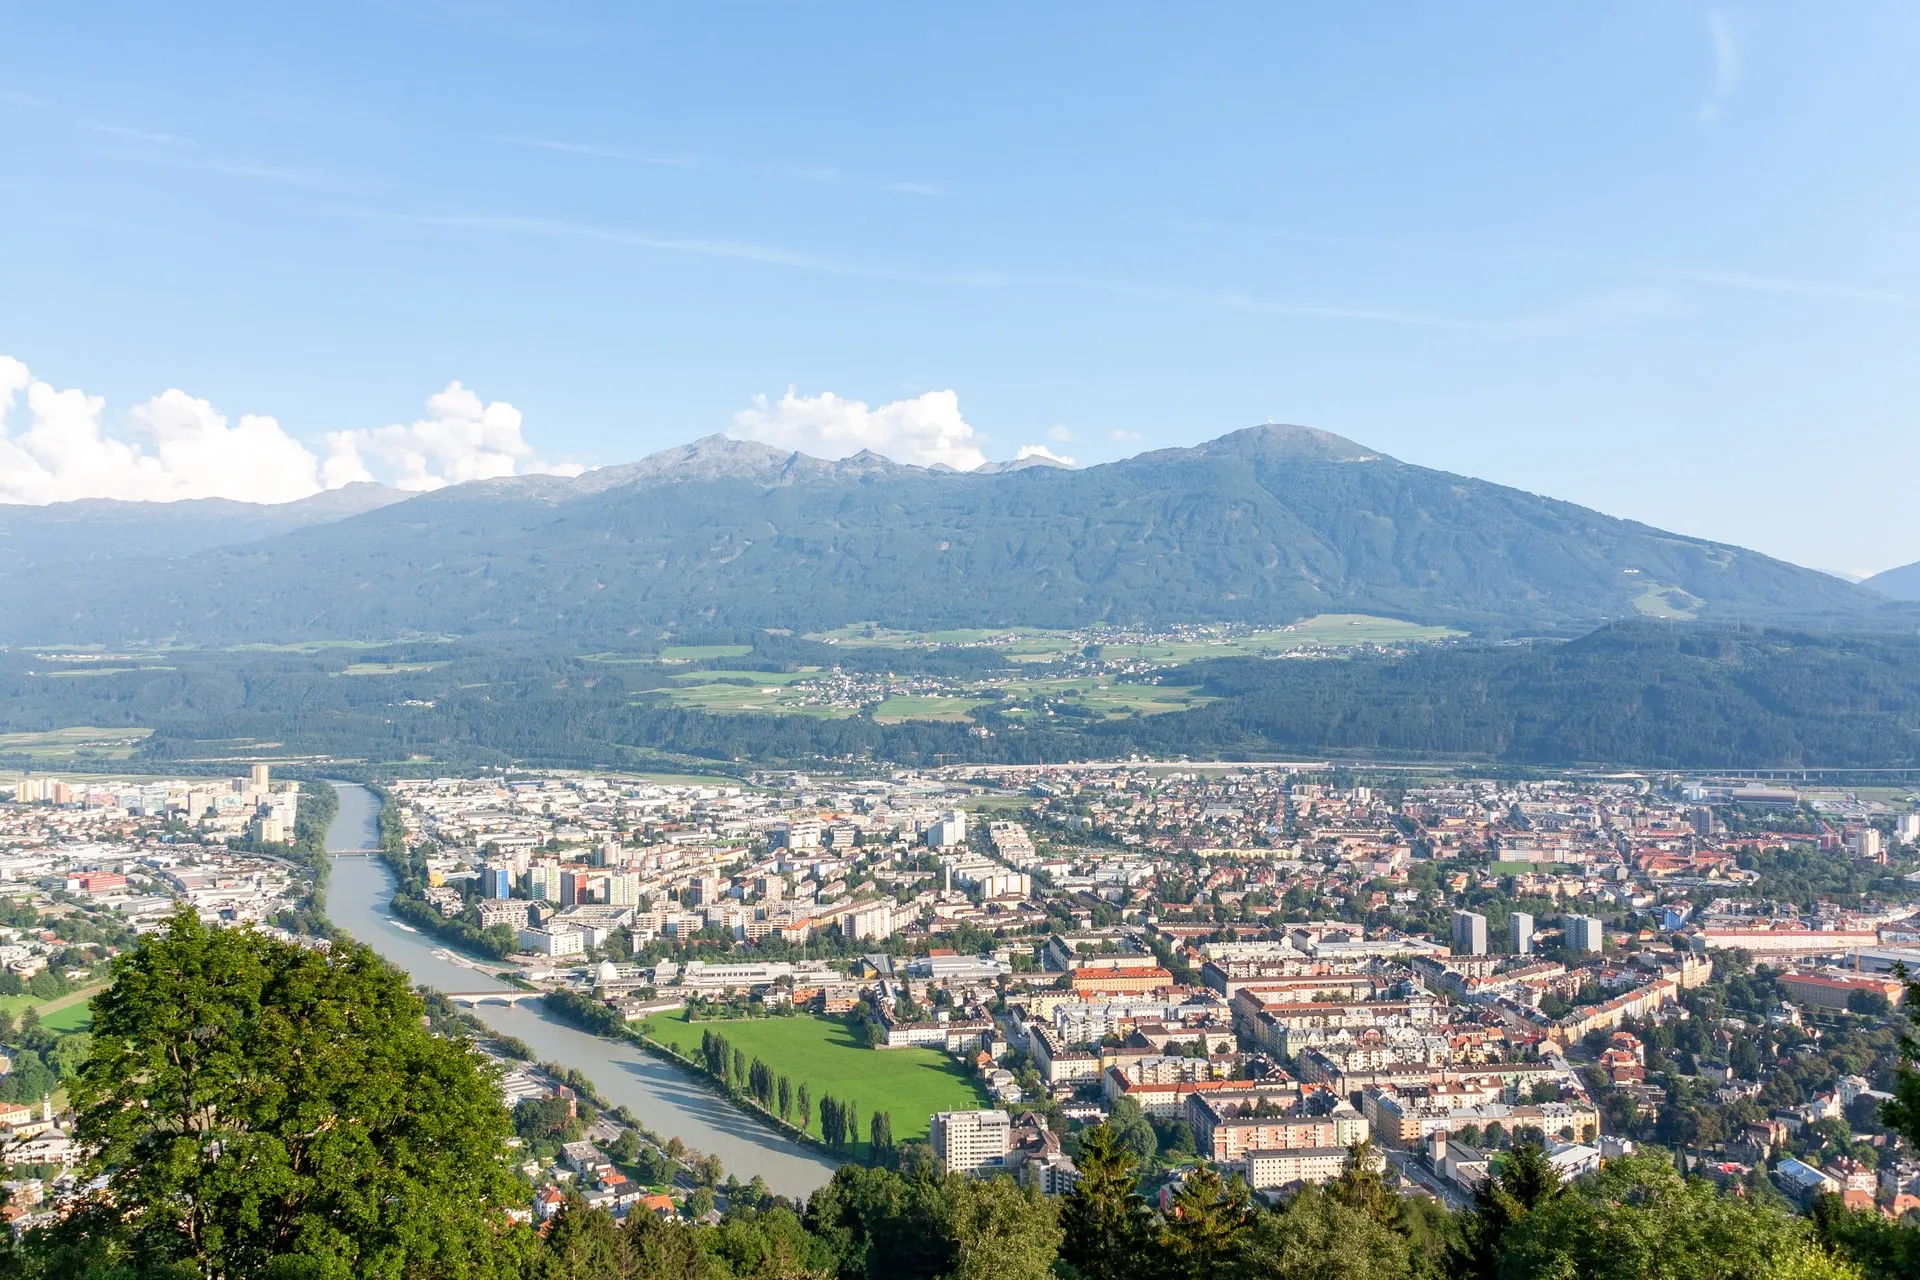 View of Innsbruck, Austria